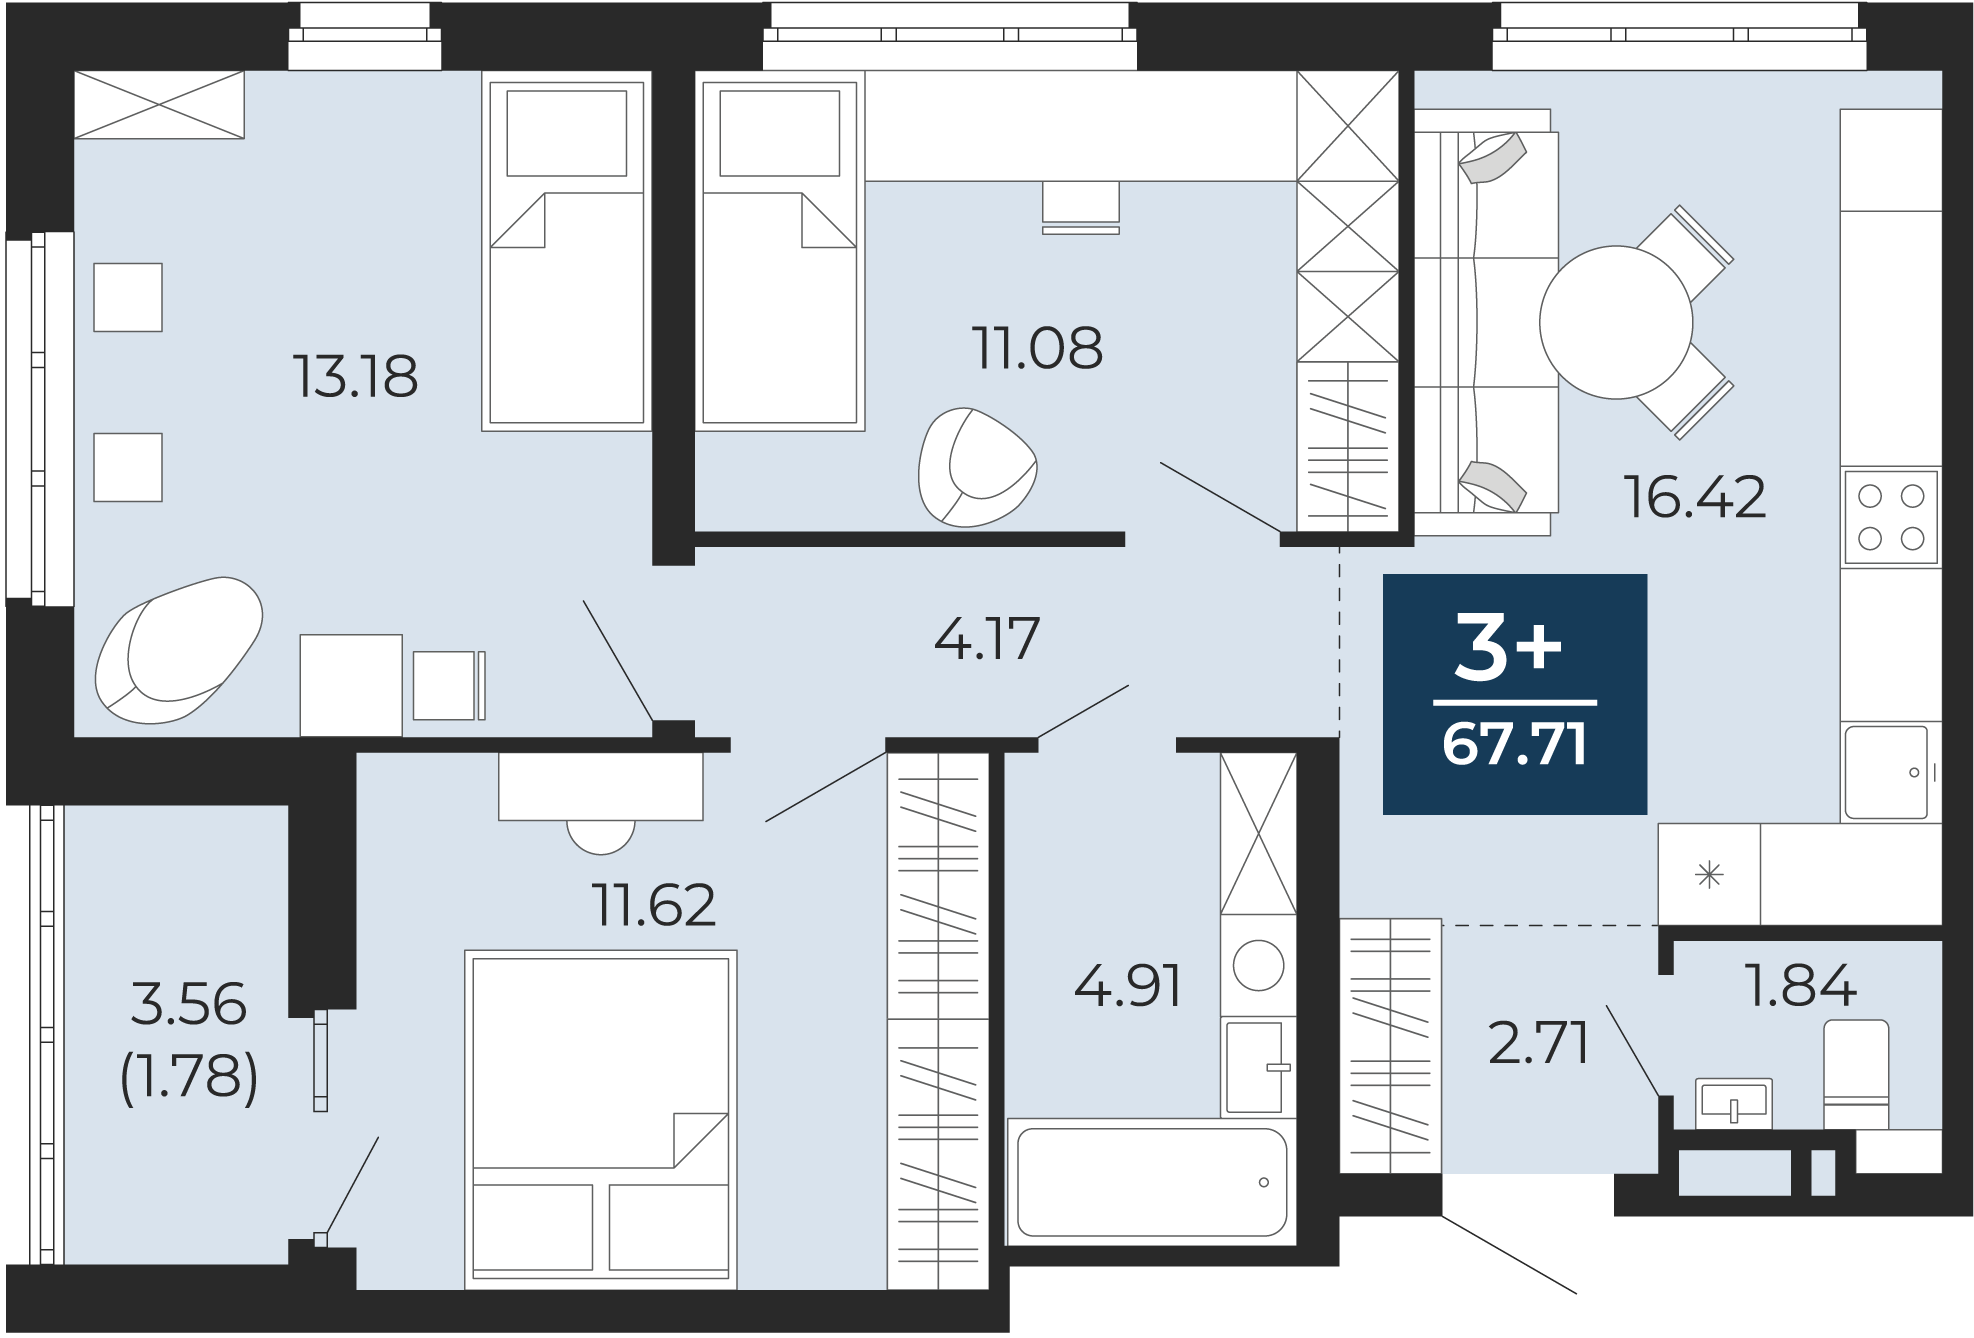 Квартира № 110, 3-комнатная, 67.71 кв. м, 10 этаж